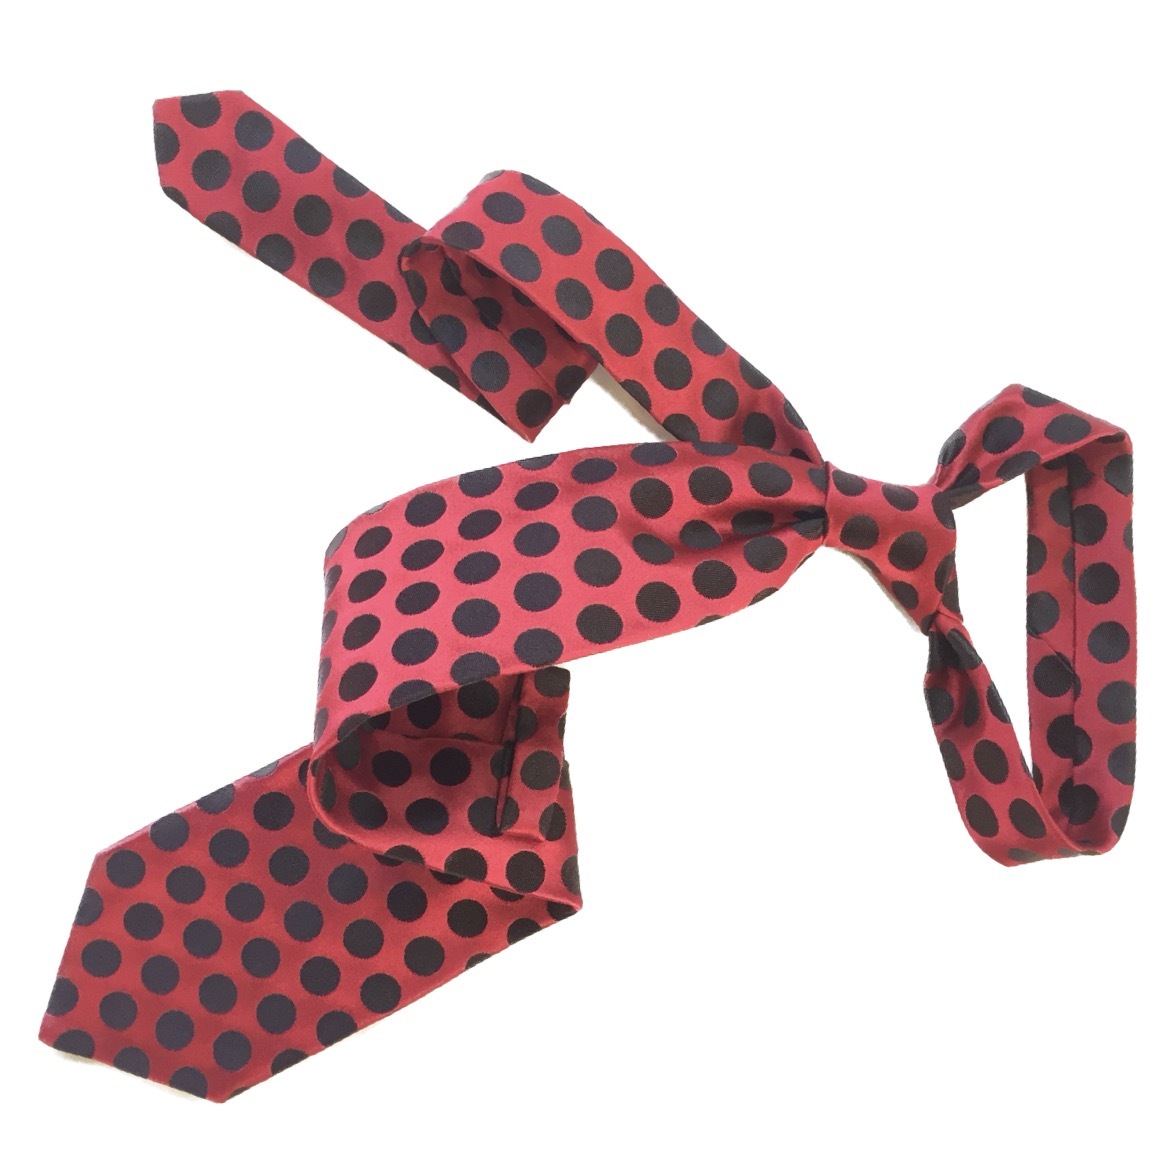 ジャンフランコフェレ GIANERANCO FERRE ハンドメイド ネクタイ 赤x黒 ドット イタリア製 M 美品_画像3